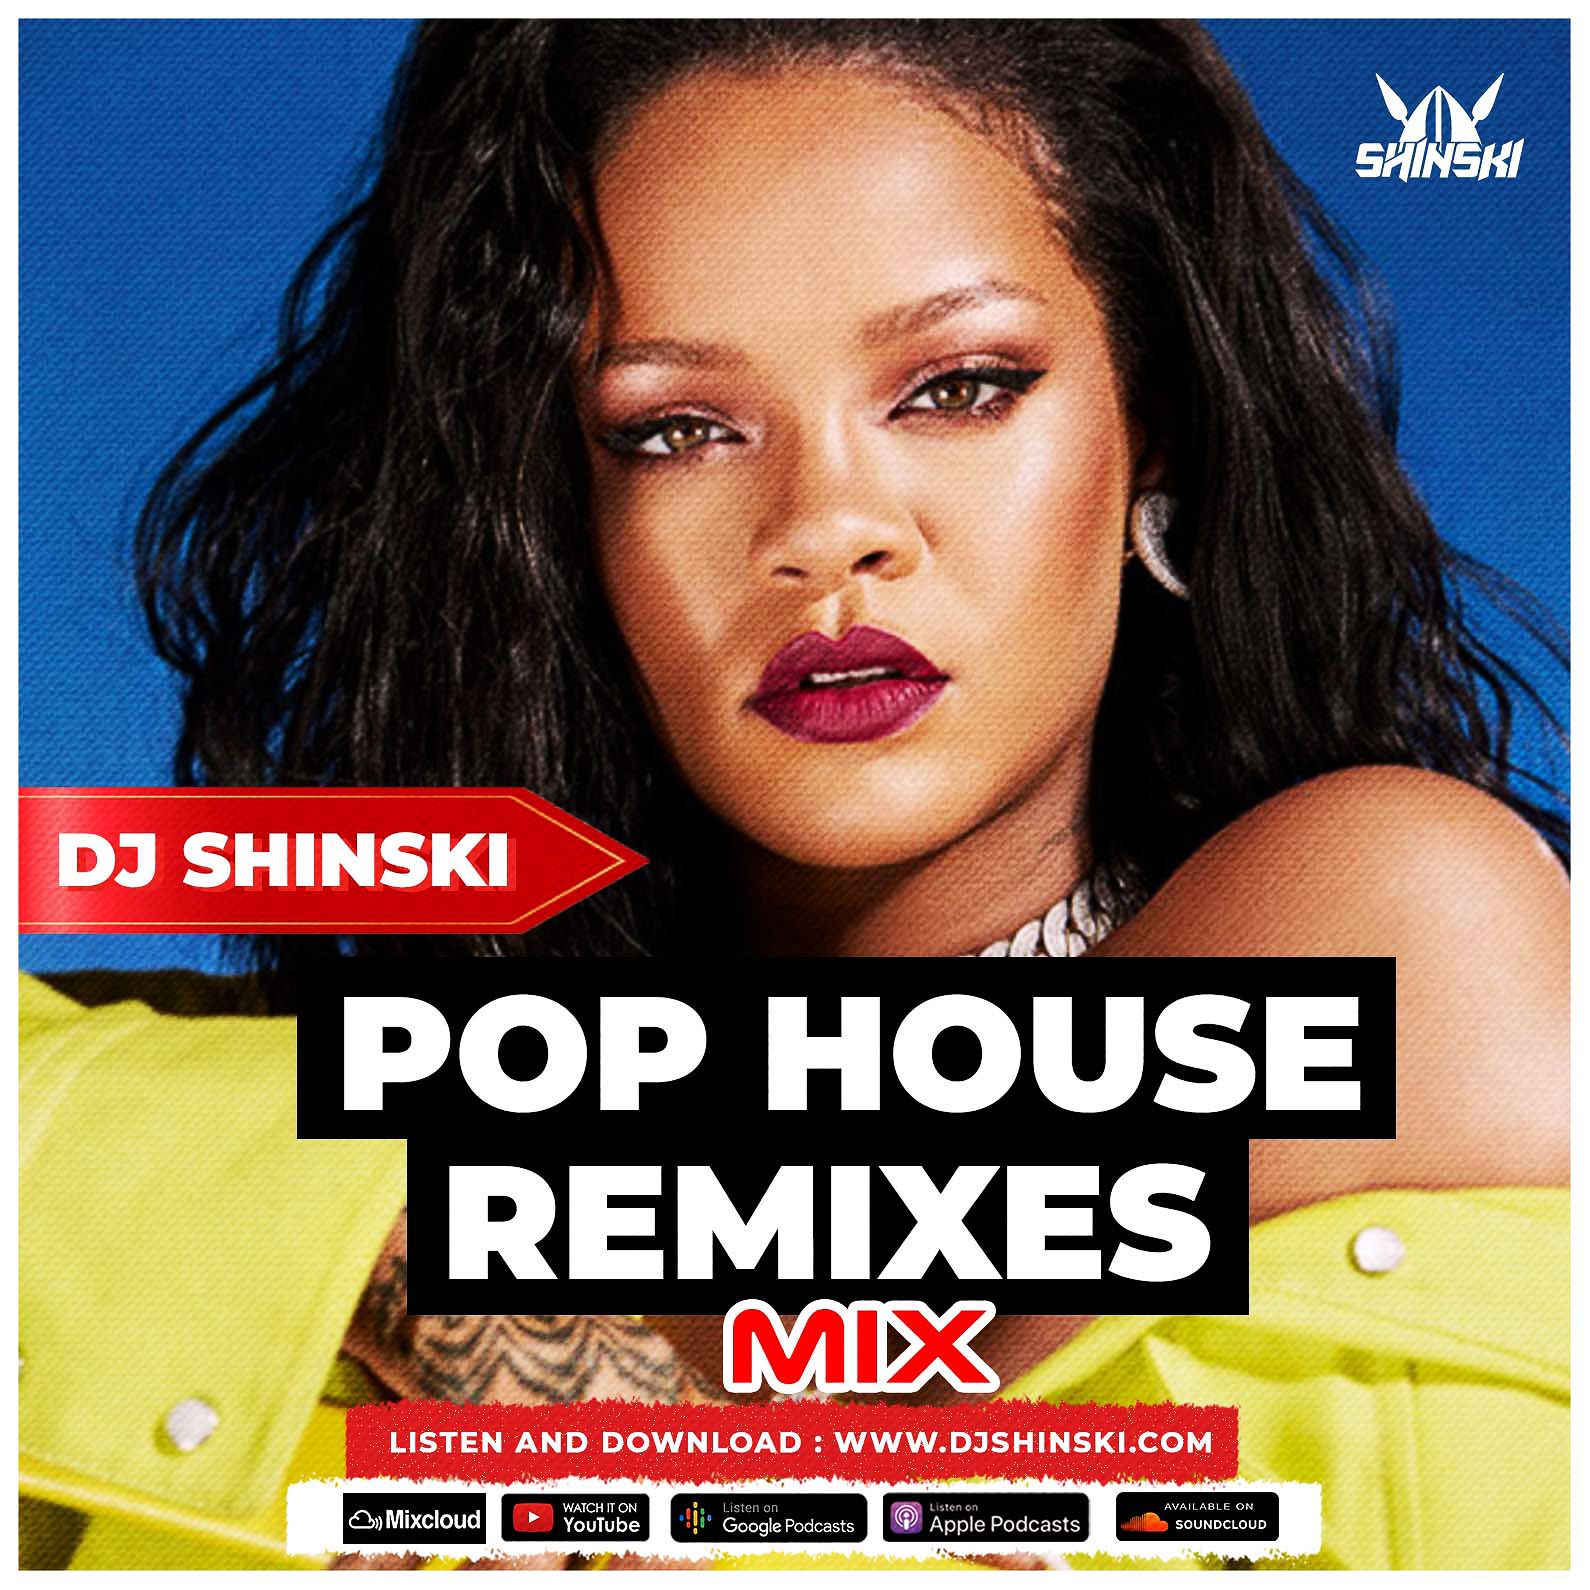 ဒေါင်းလုပ် Best of Popular Pop House remixes 2022 Mix [Beyonce, Rihanna, Drake, Pepas, Ne-yo, David Guetta]